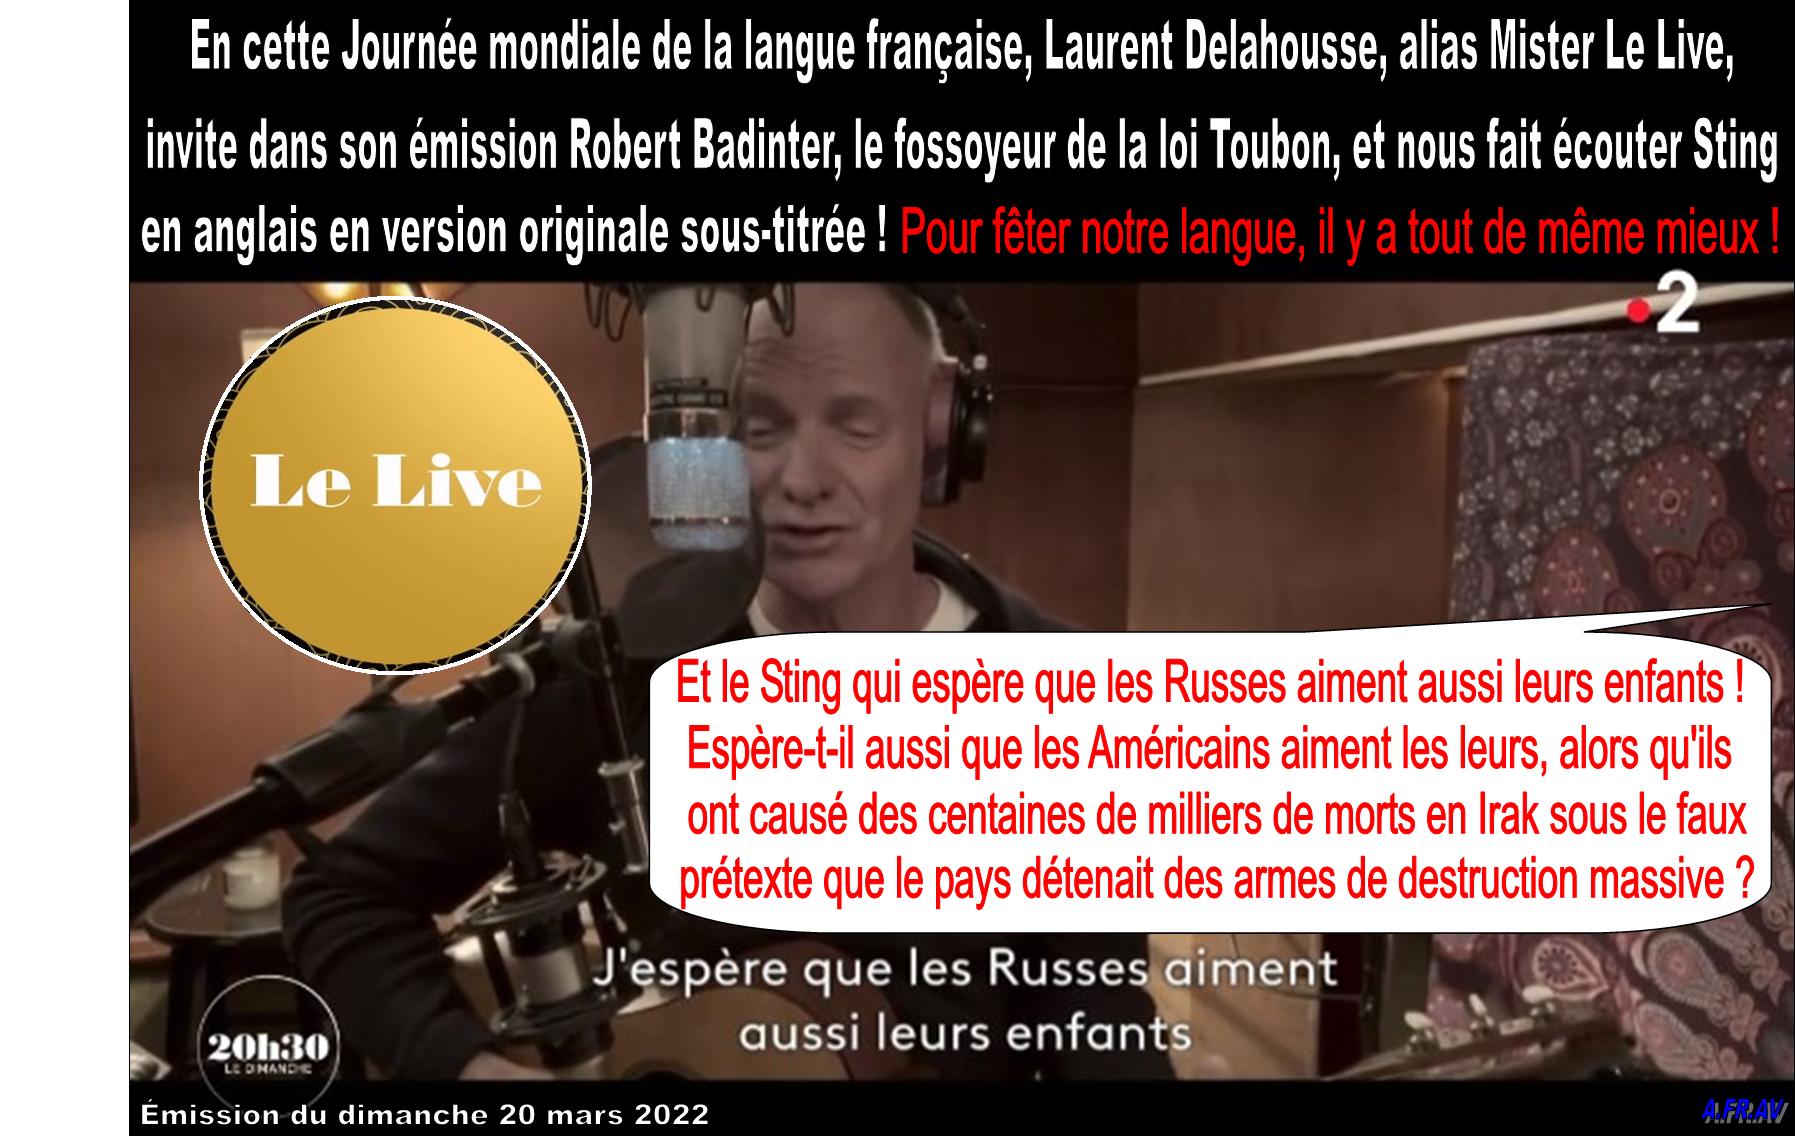 Laurent Delahousse, Robert Badinter, Sting, 20h30 le Dimanche, France Télévisions